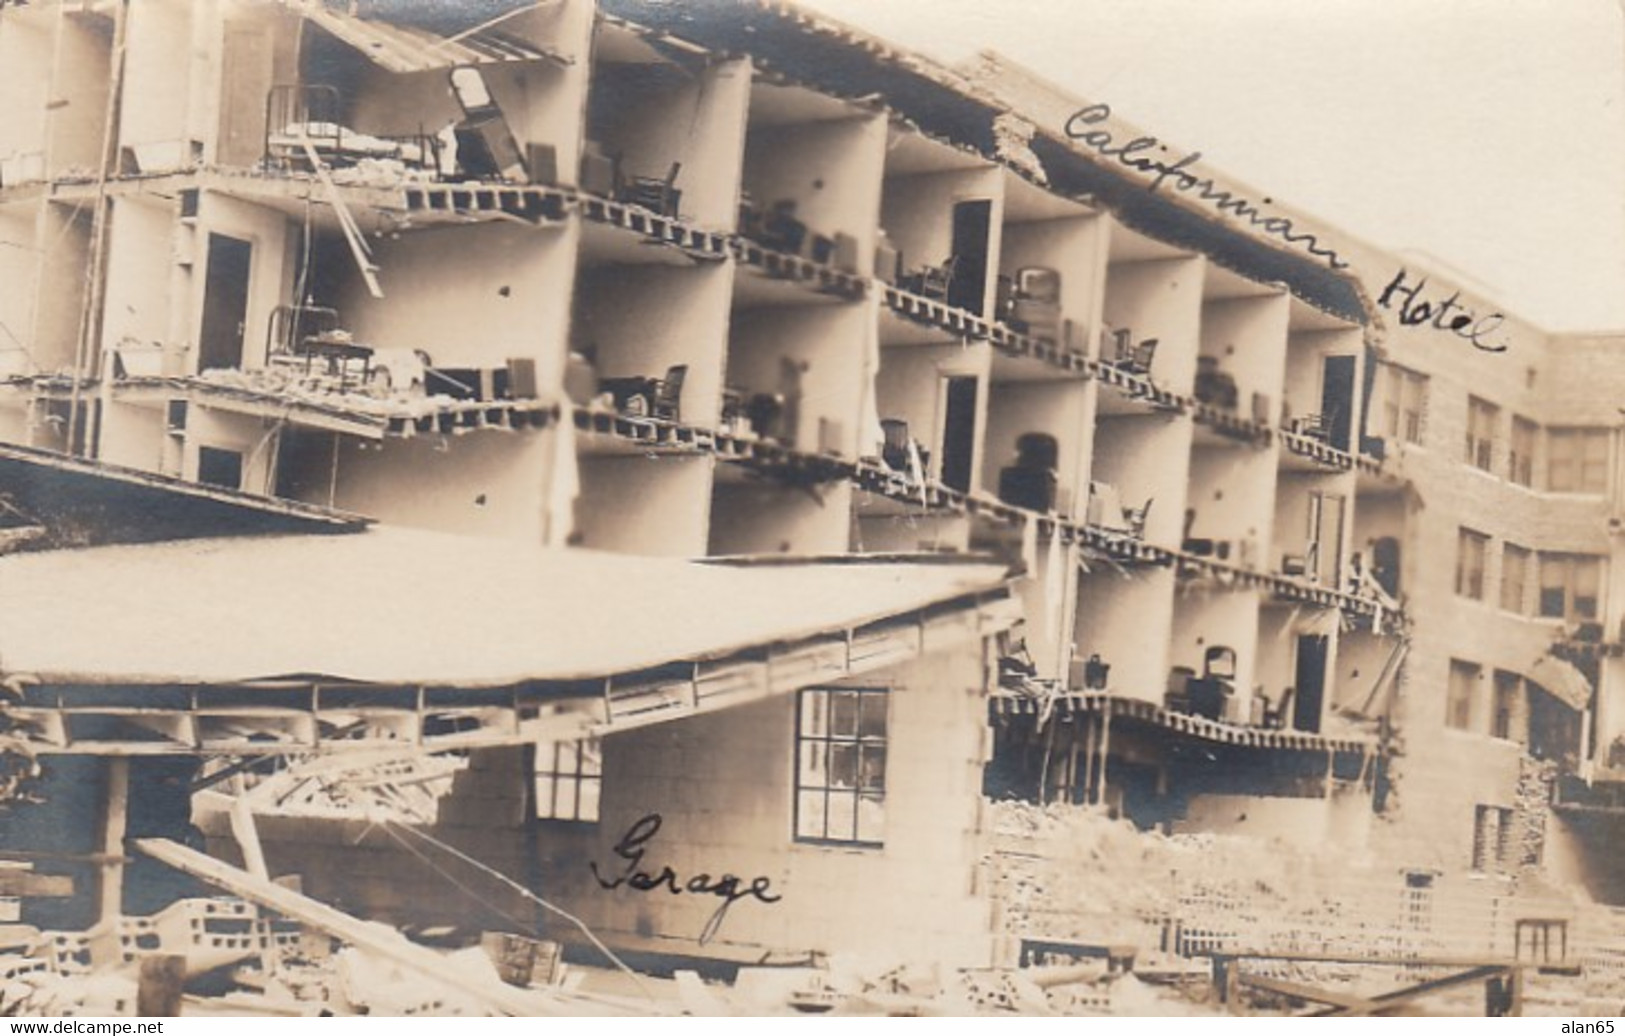 Long Beach California, 1933 Earthquake, California Hotel Ruins C1930s Vintage Real Photo Postcard - Long Beach